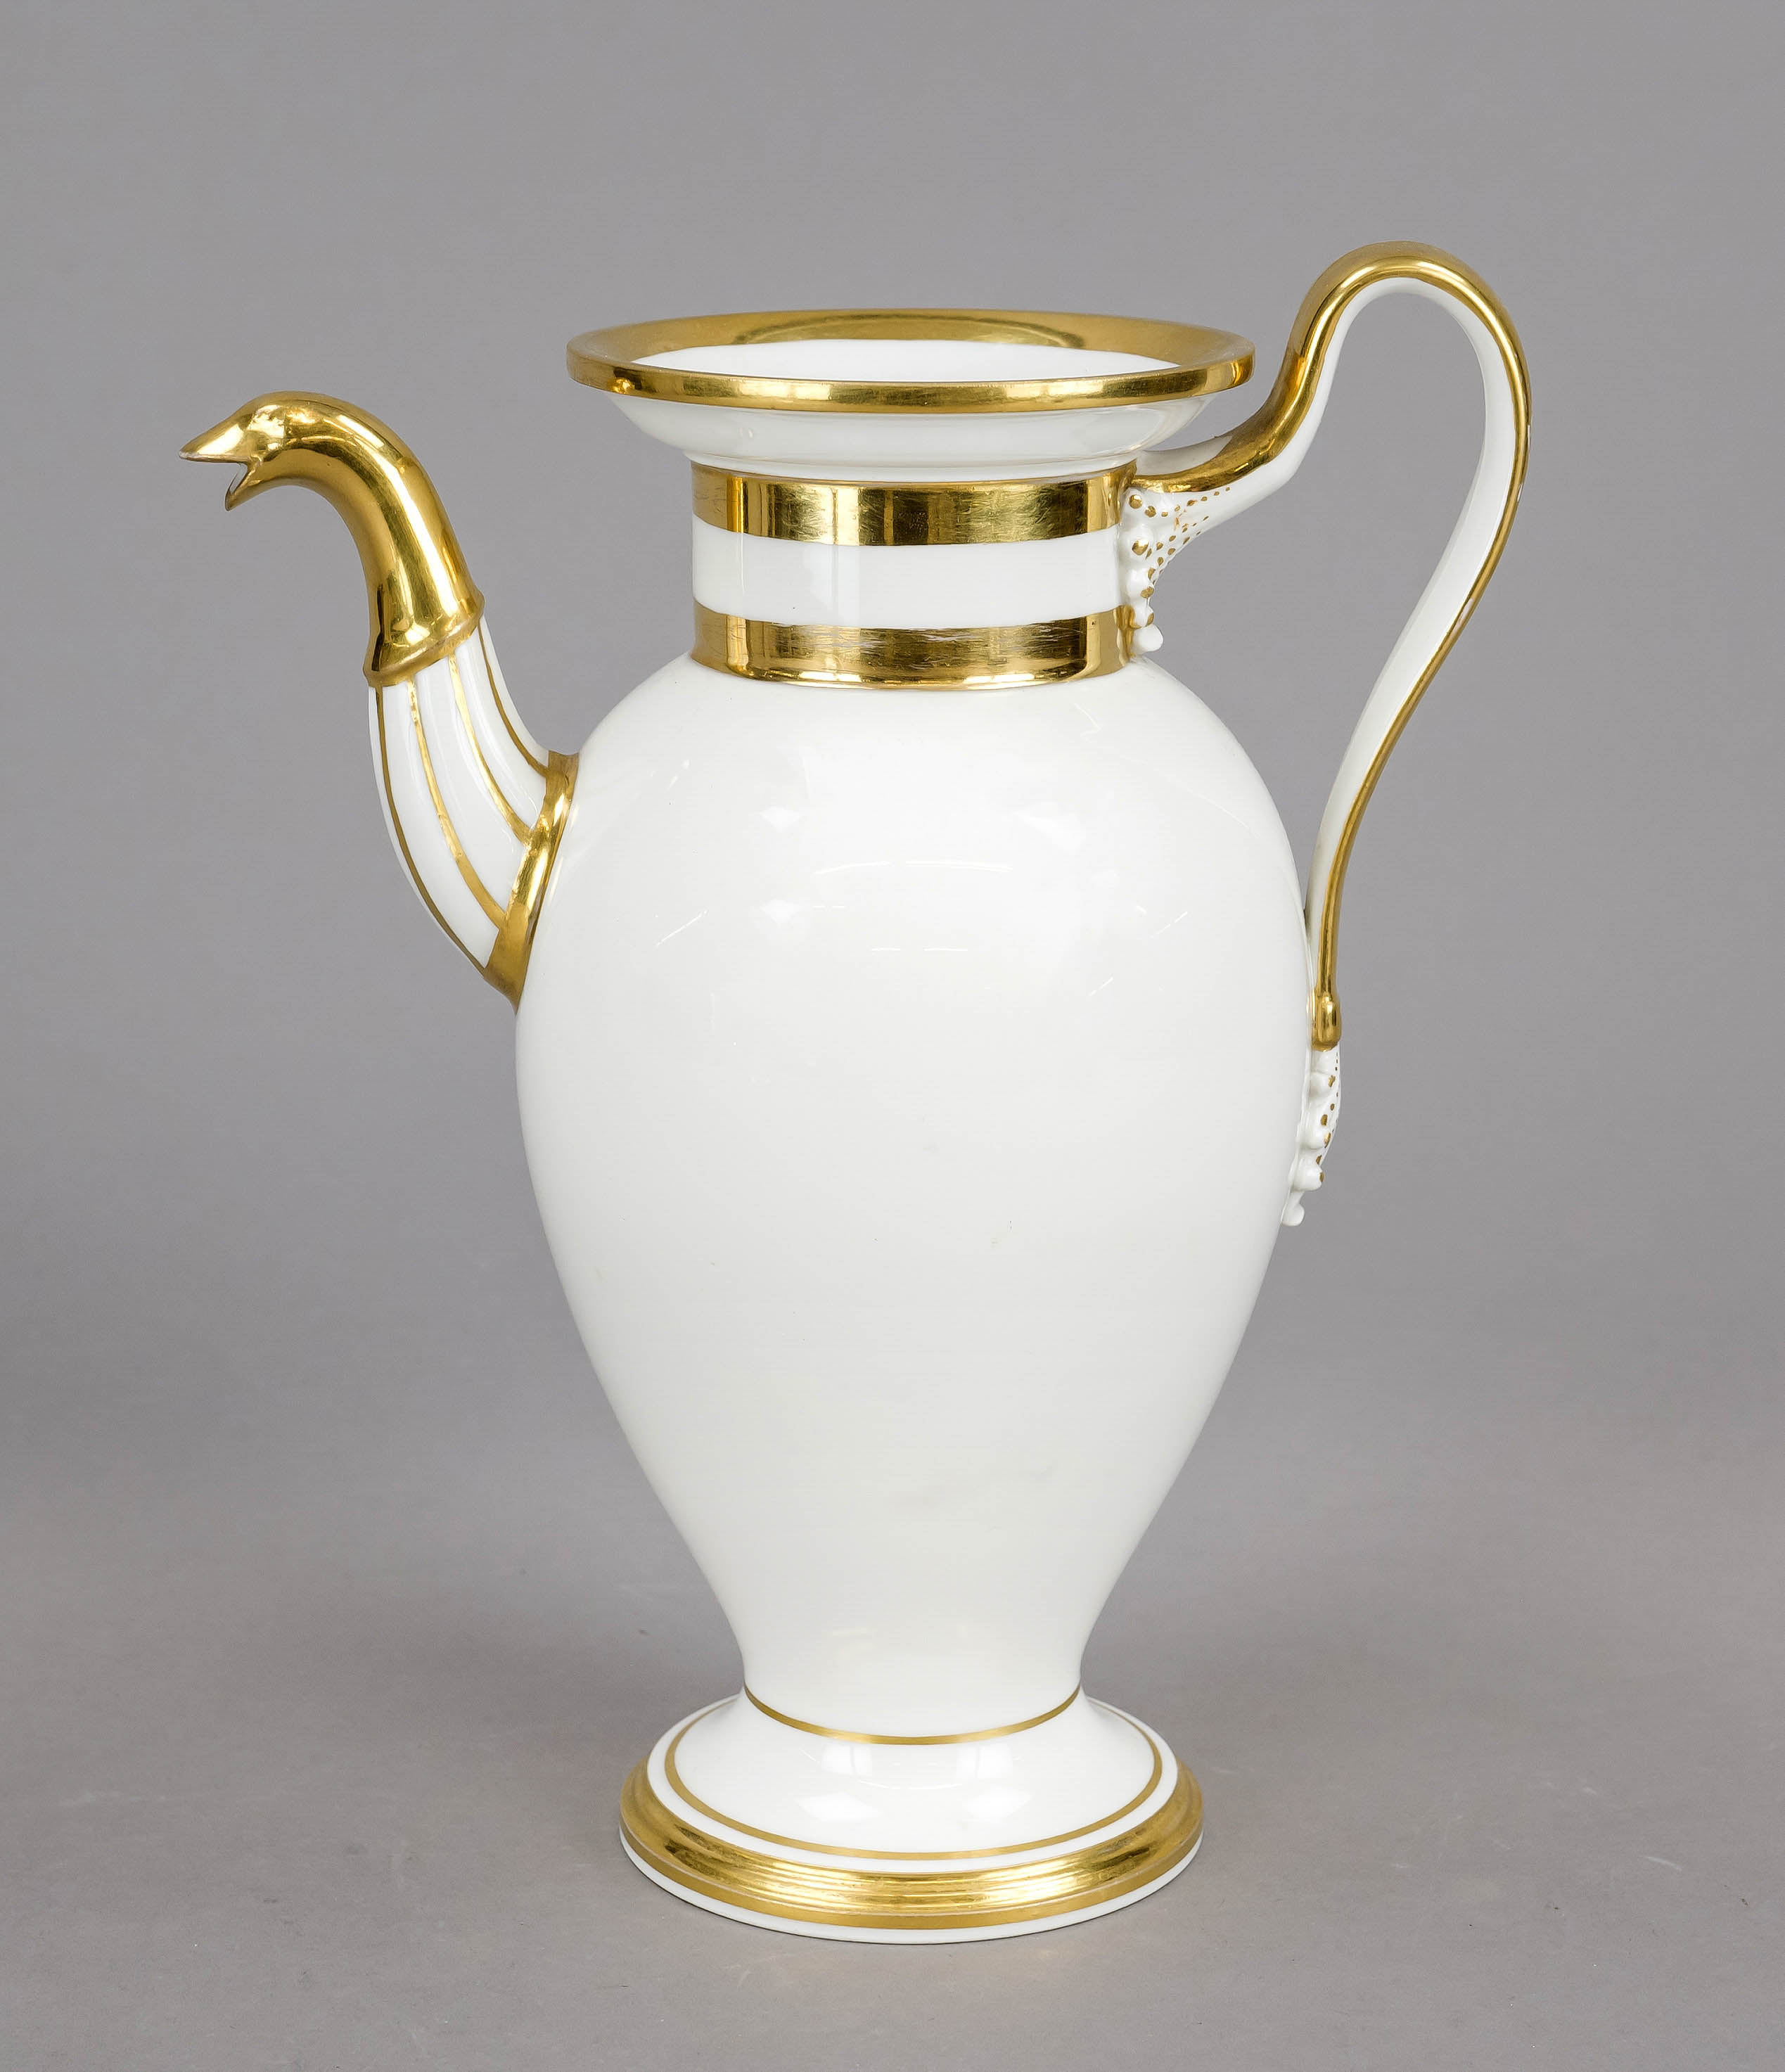 Coffee pot, Nymphenburg, 20th century, handle spout, lid missing, decorative gilding, h. 24 cm